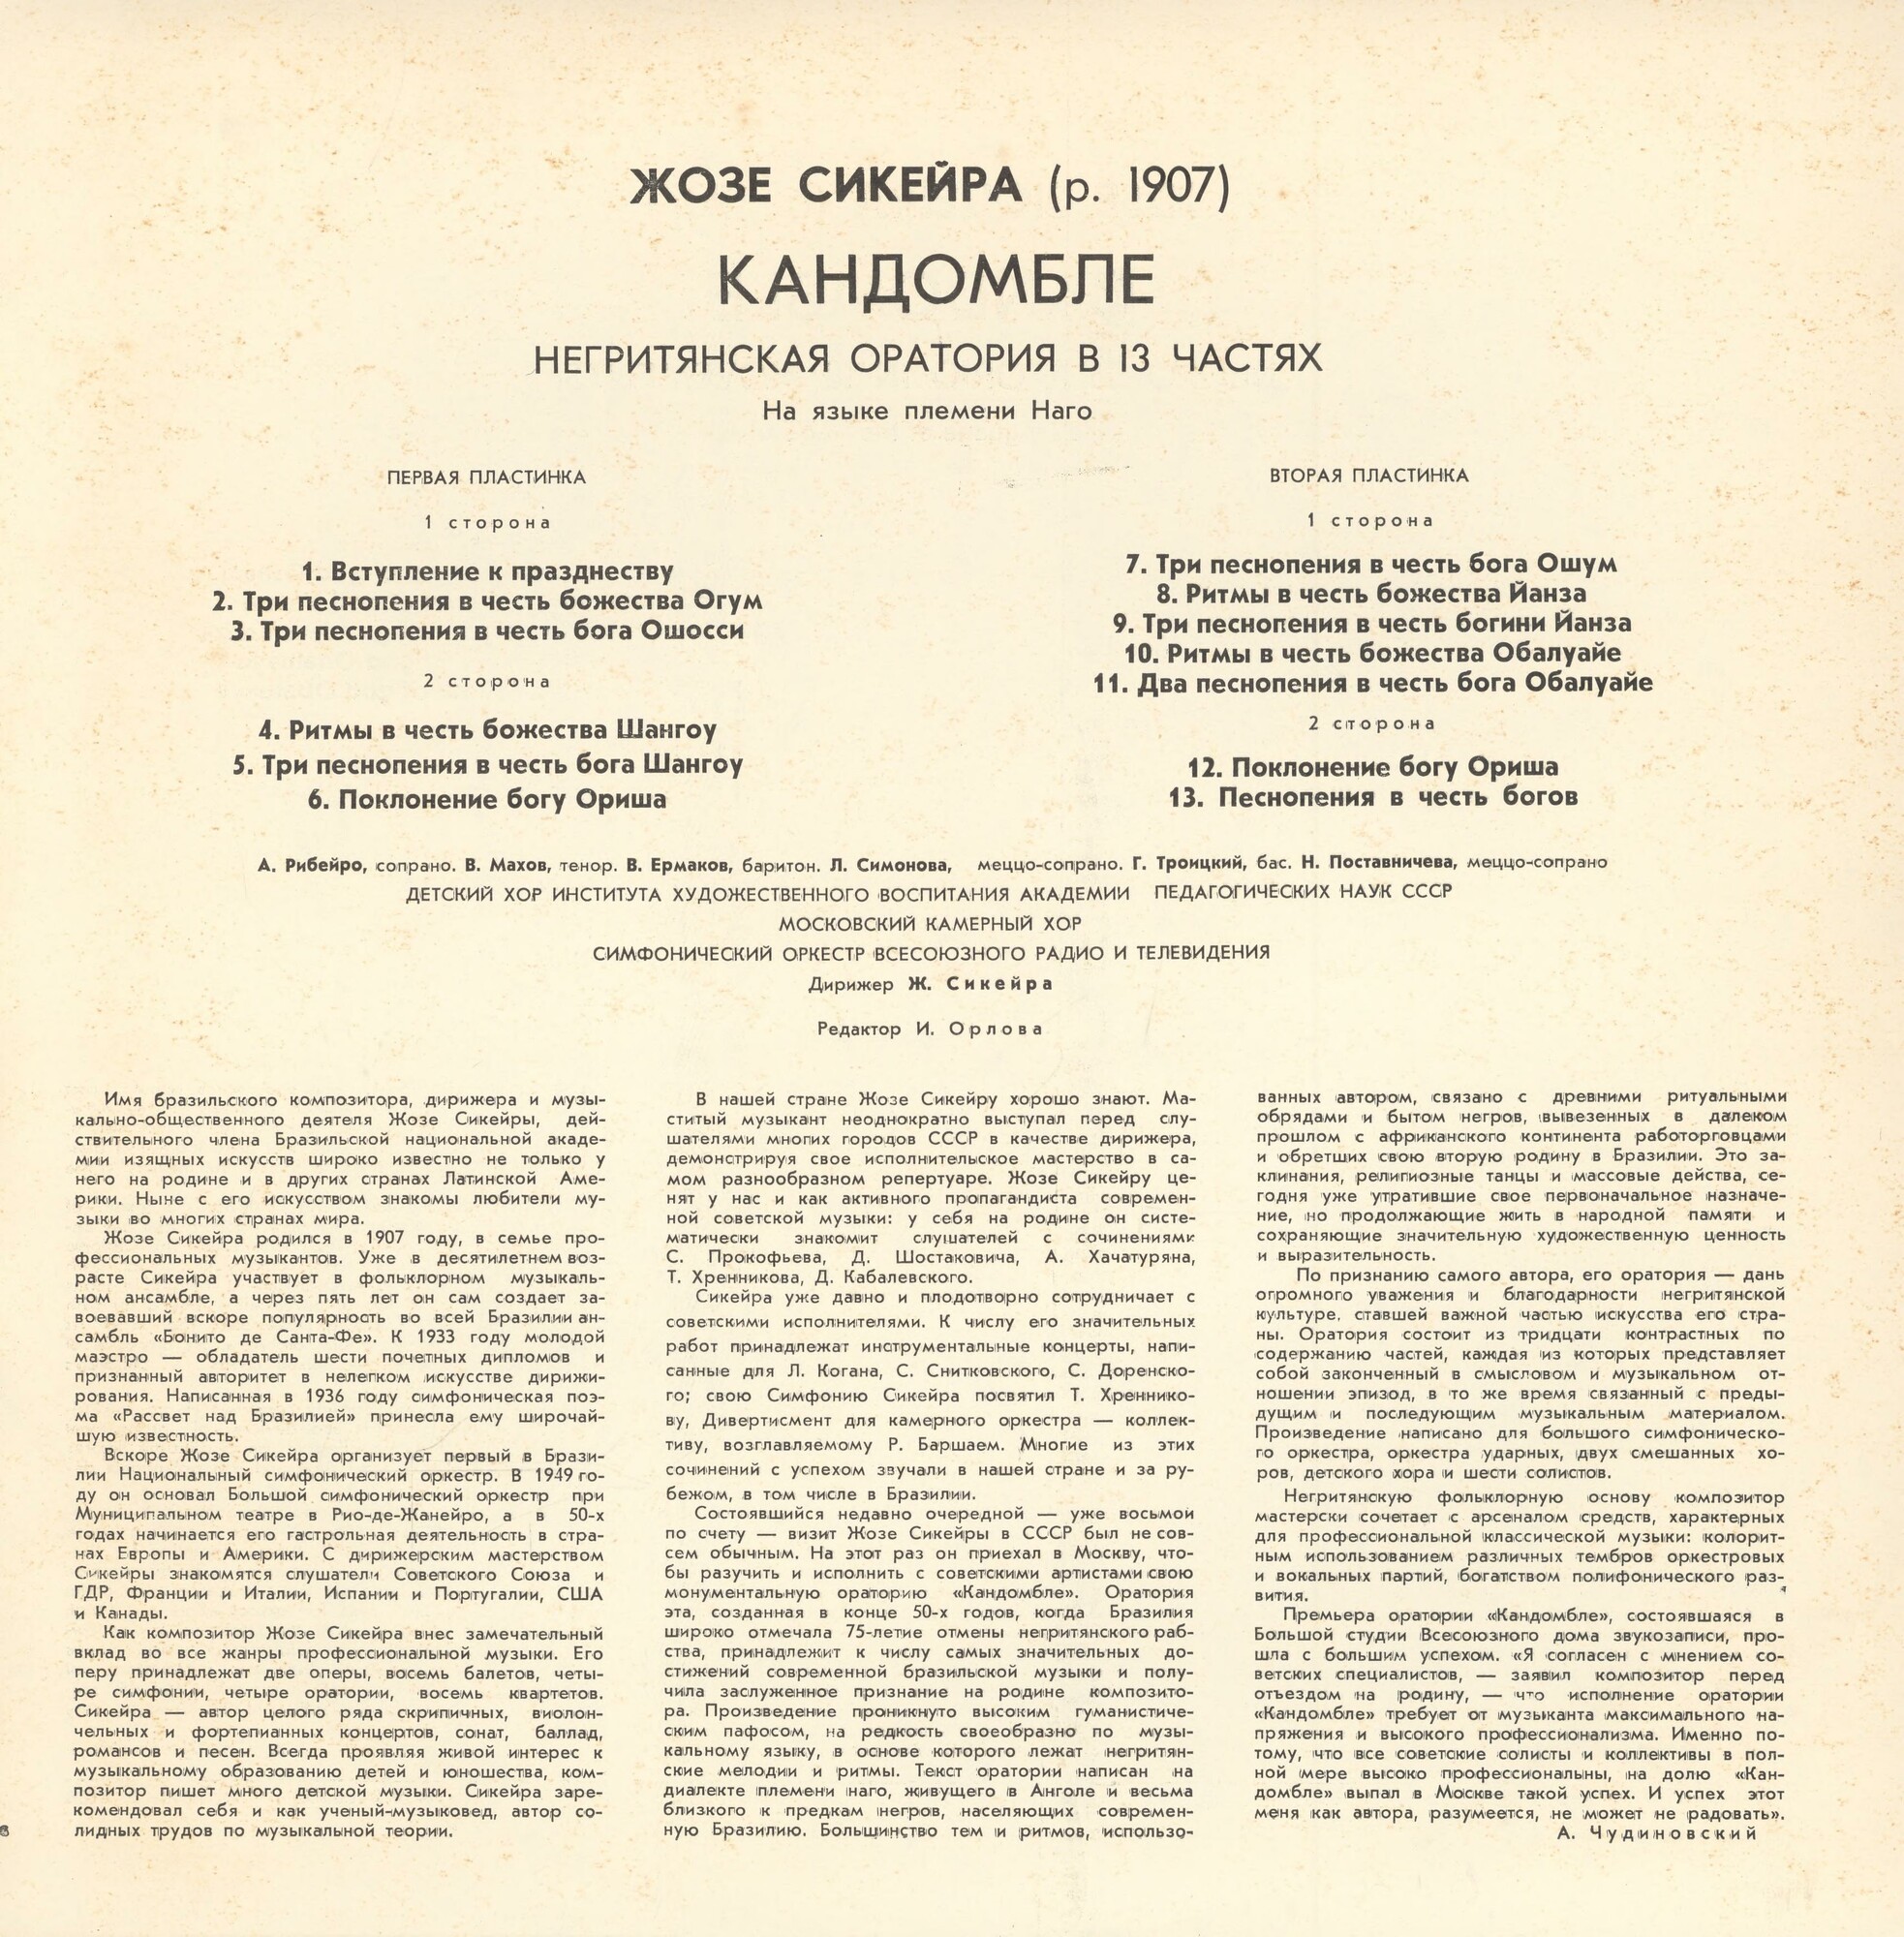 Жозе СИКЕЙРА (1907). «Кандомбле», негритянская оратория в 13 частях (на языке племени Наго)